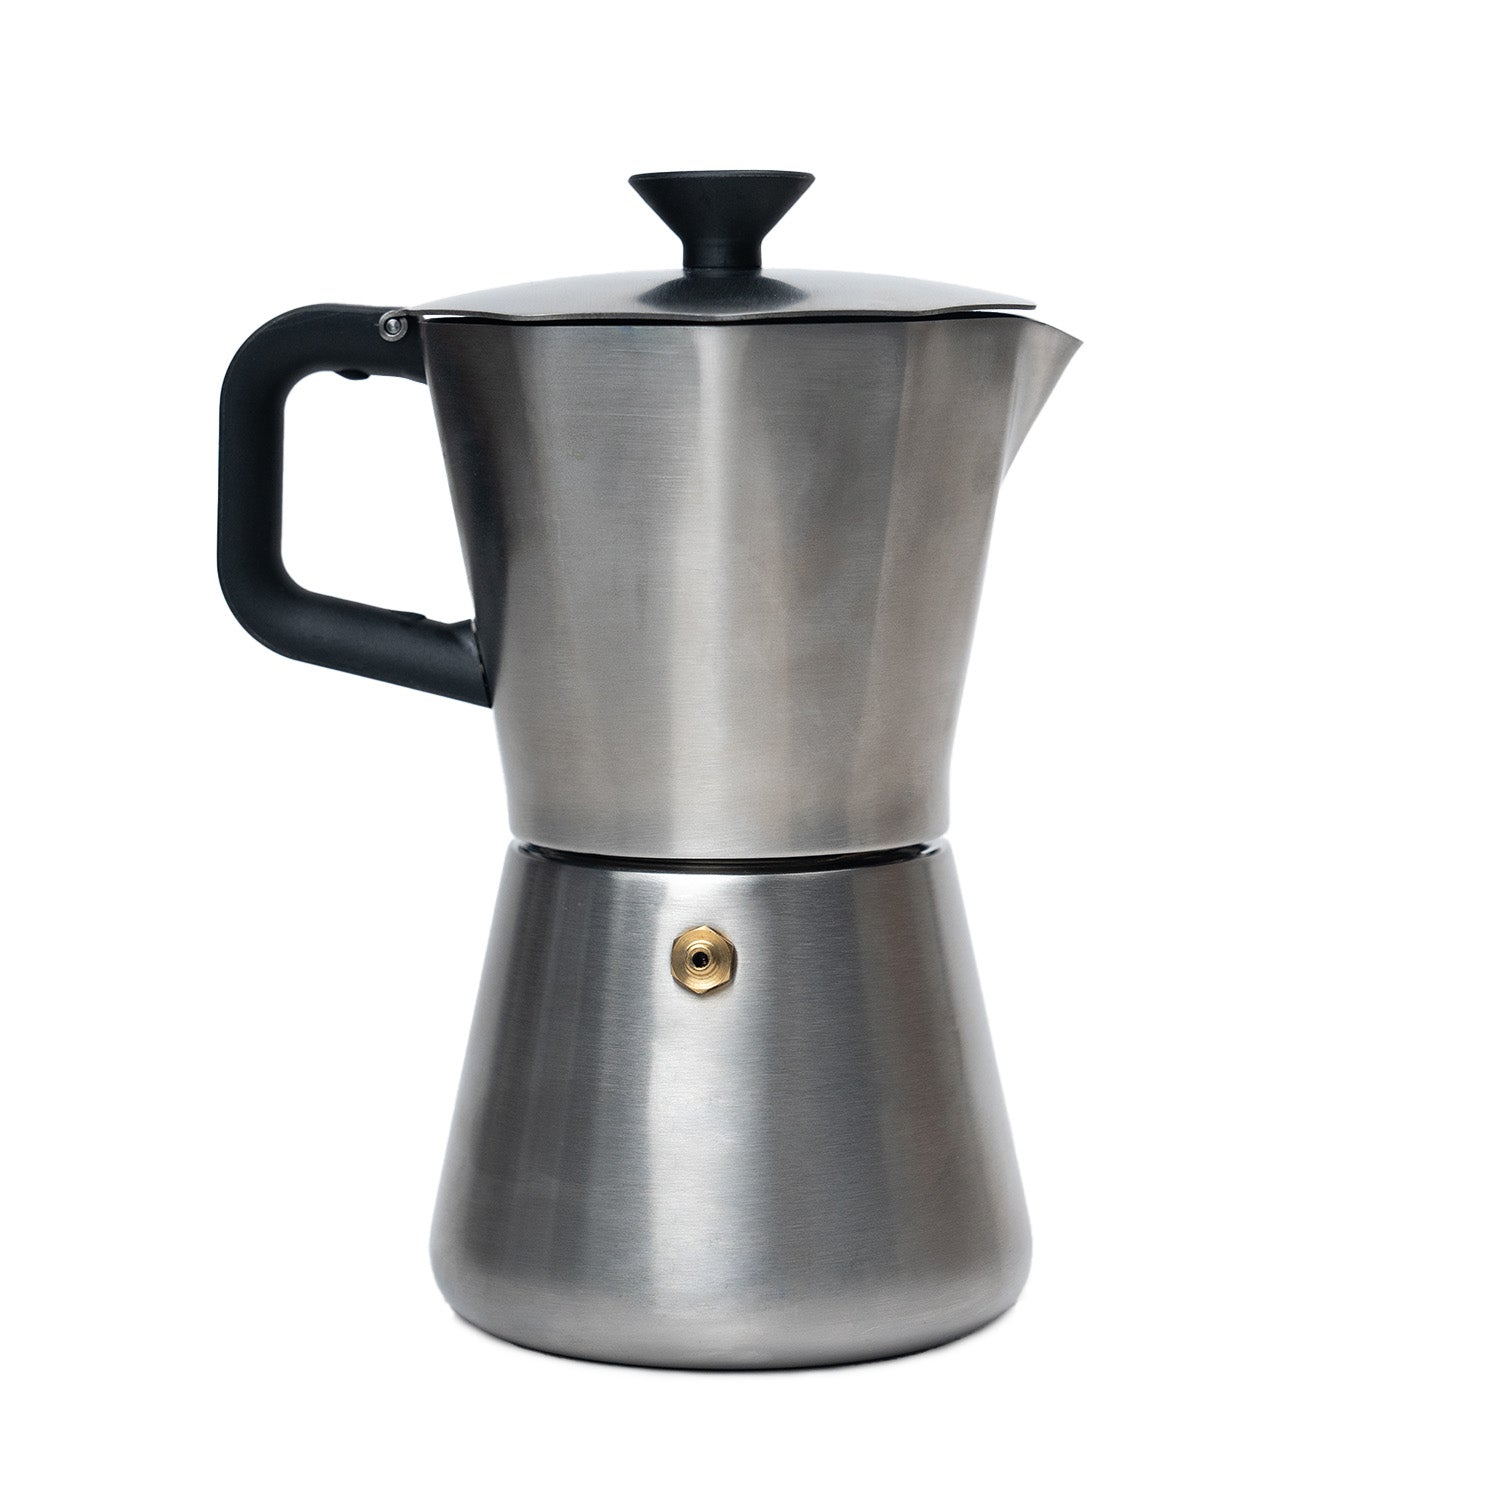 Espresso Maker, Single Spout Stovetop Moka Pot Stainless Steel Mini Stovetop Espresso Percolator Italian Type Espresso Cup Coffee Maker,Use on Stove